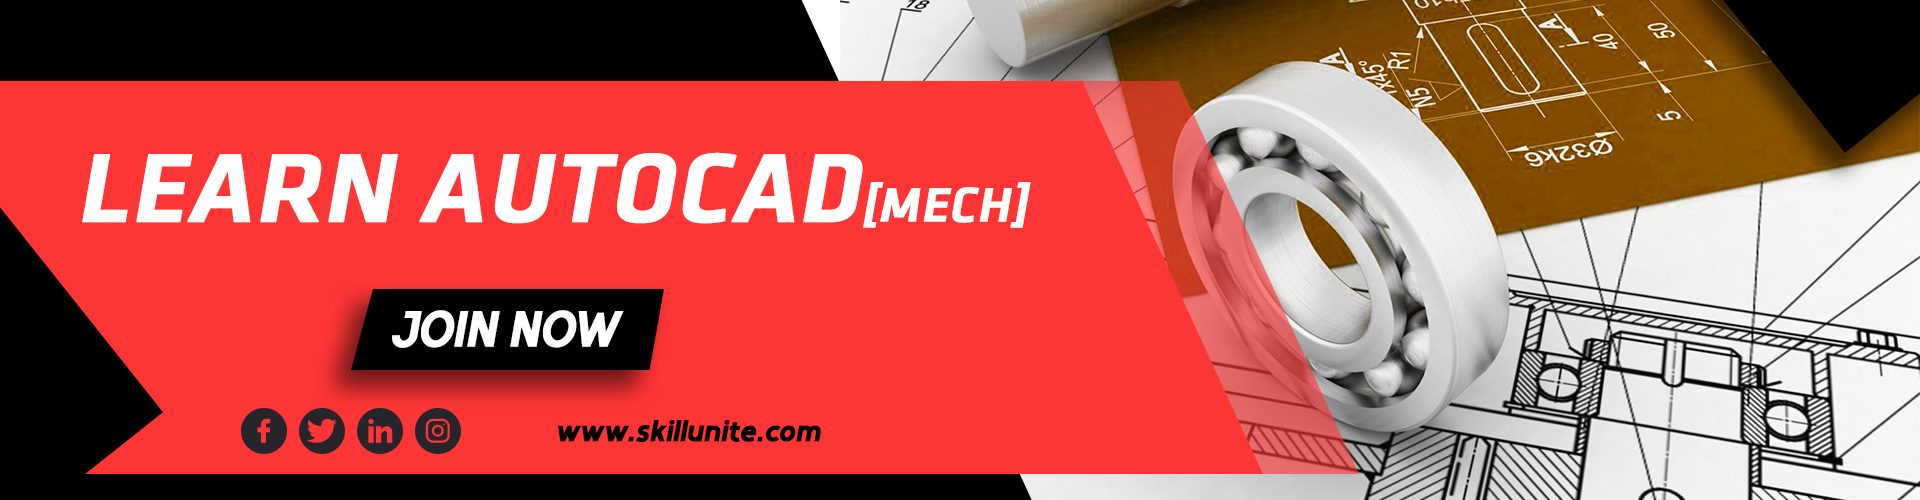 Web-course-banner-AUTOCAD-MECH-ff3535